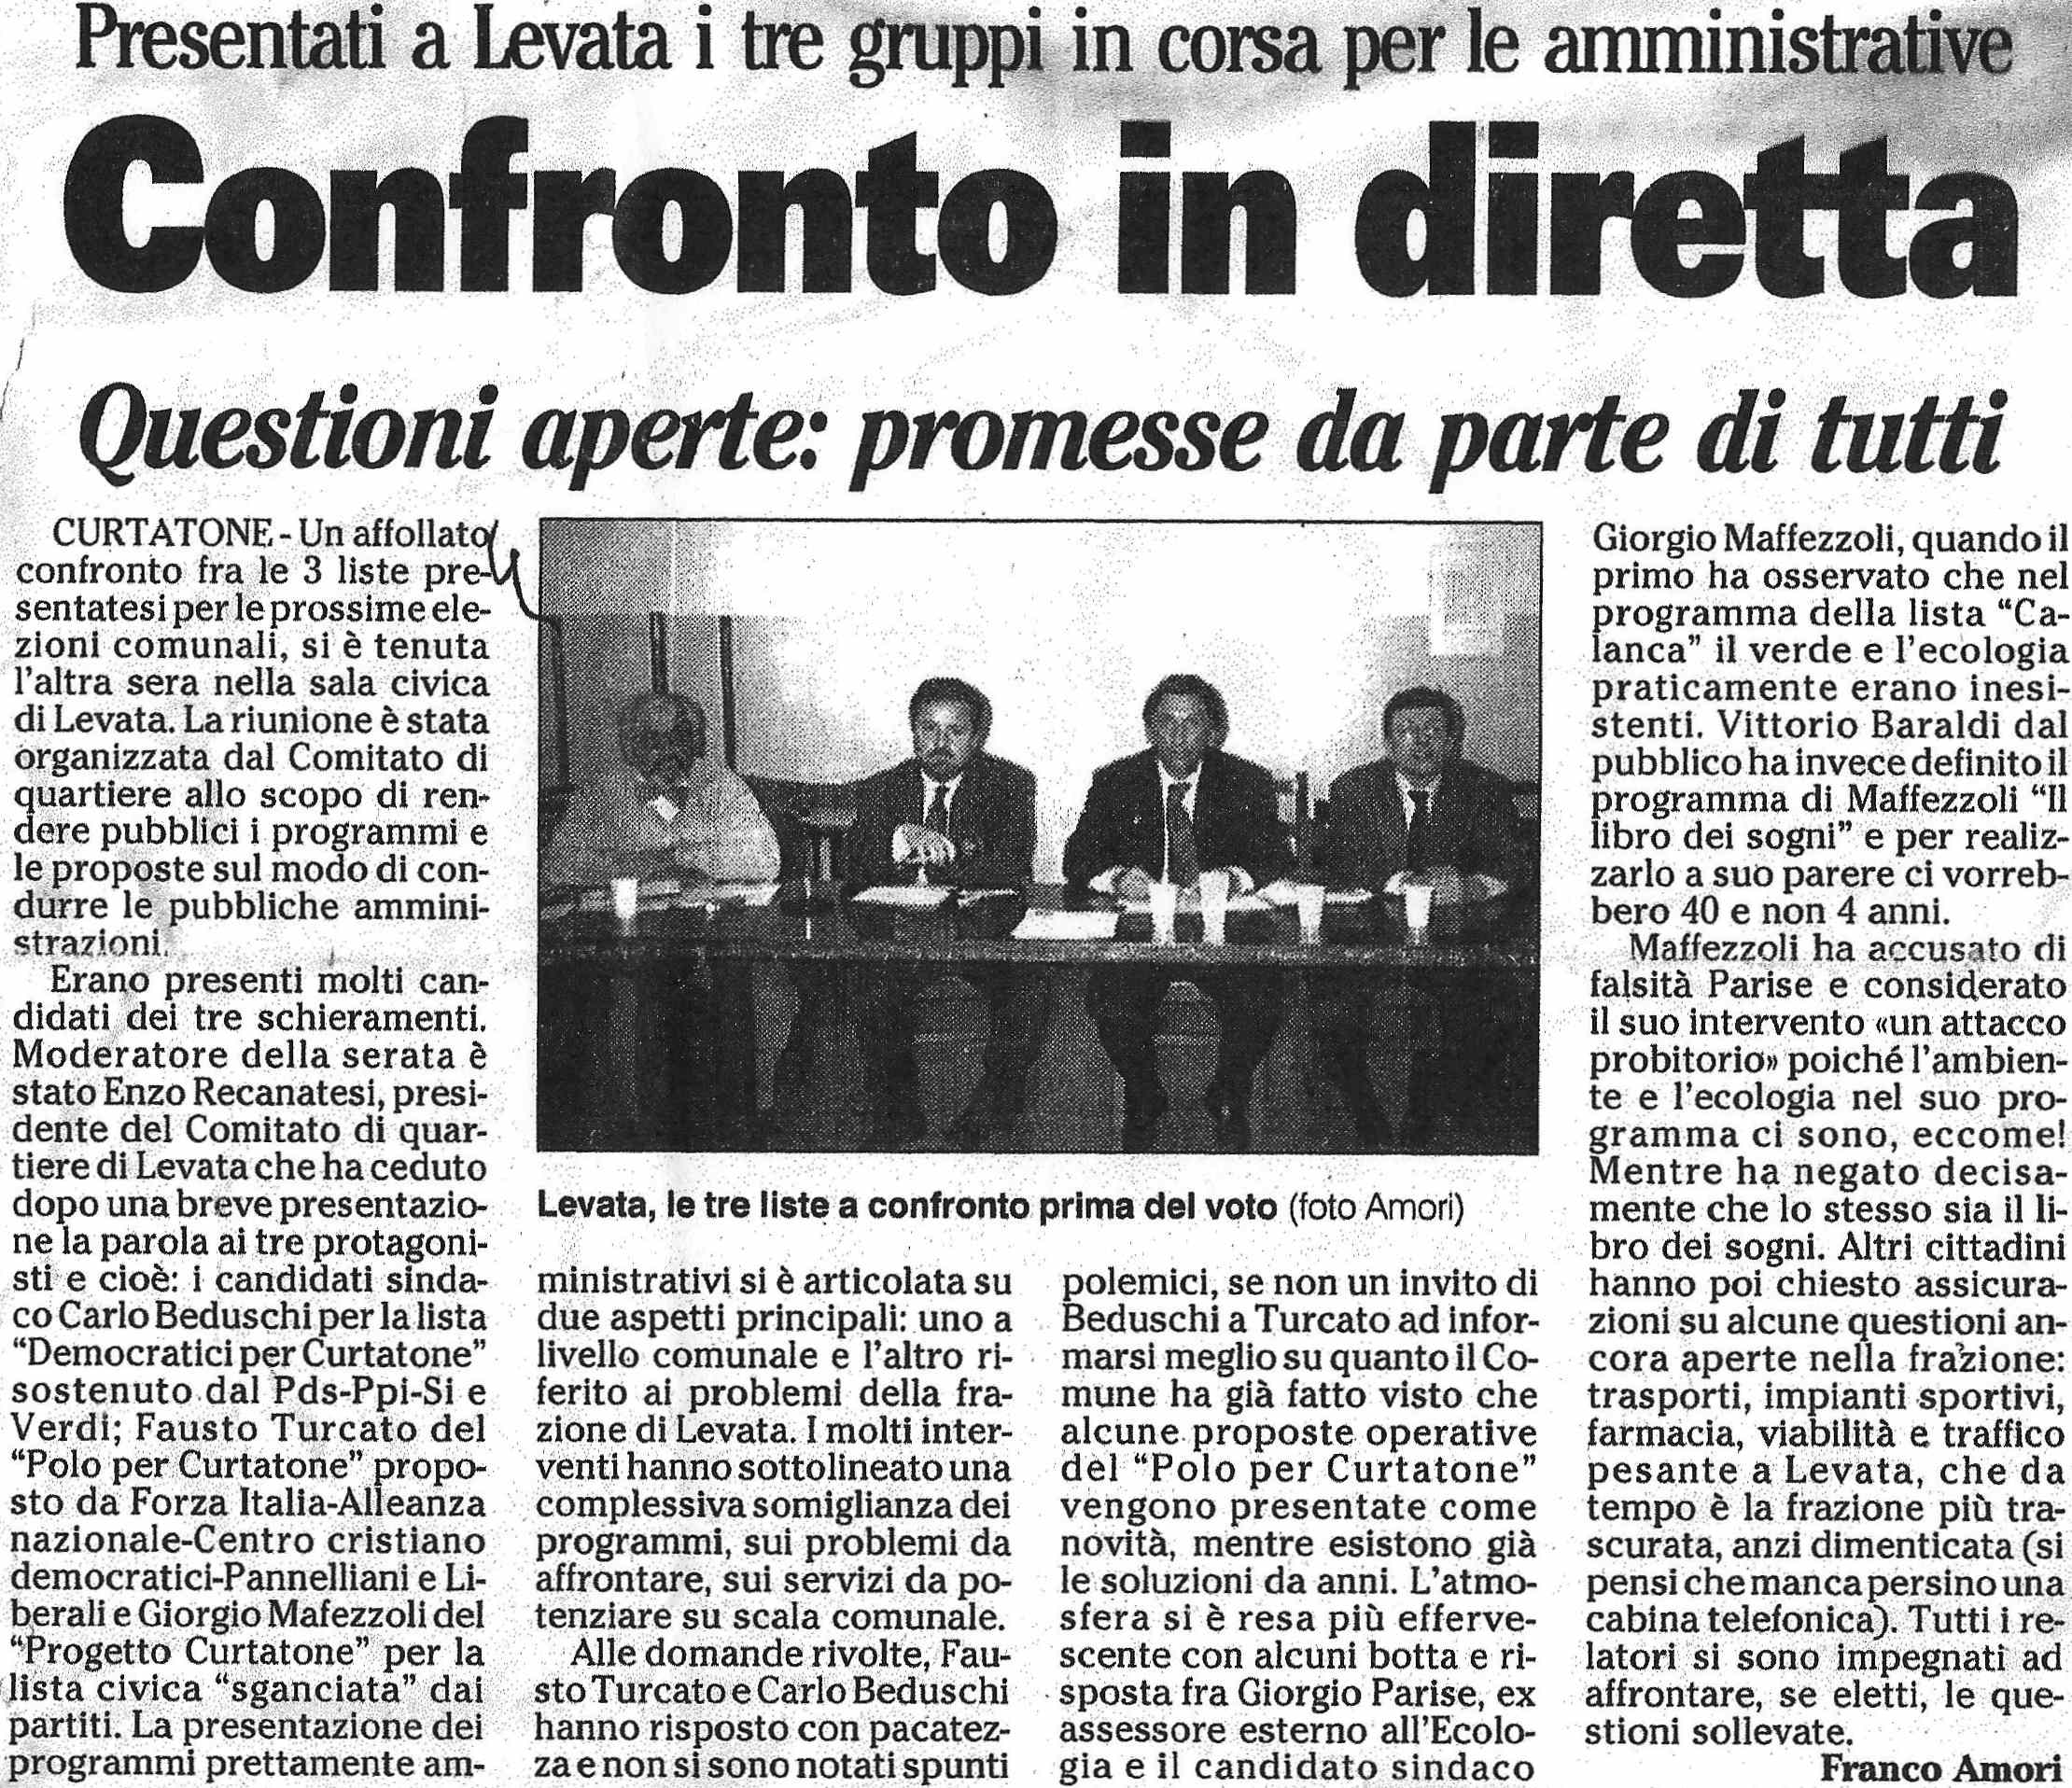 Confronto_in_diretta_Gazzetta_09-04-1995